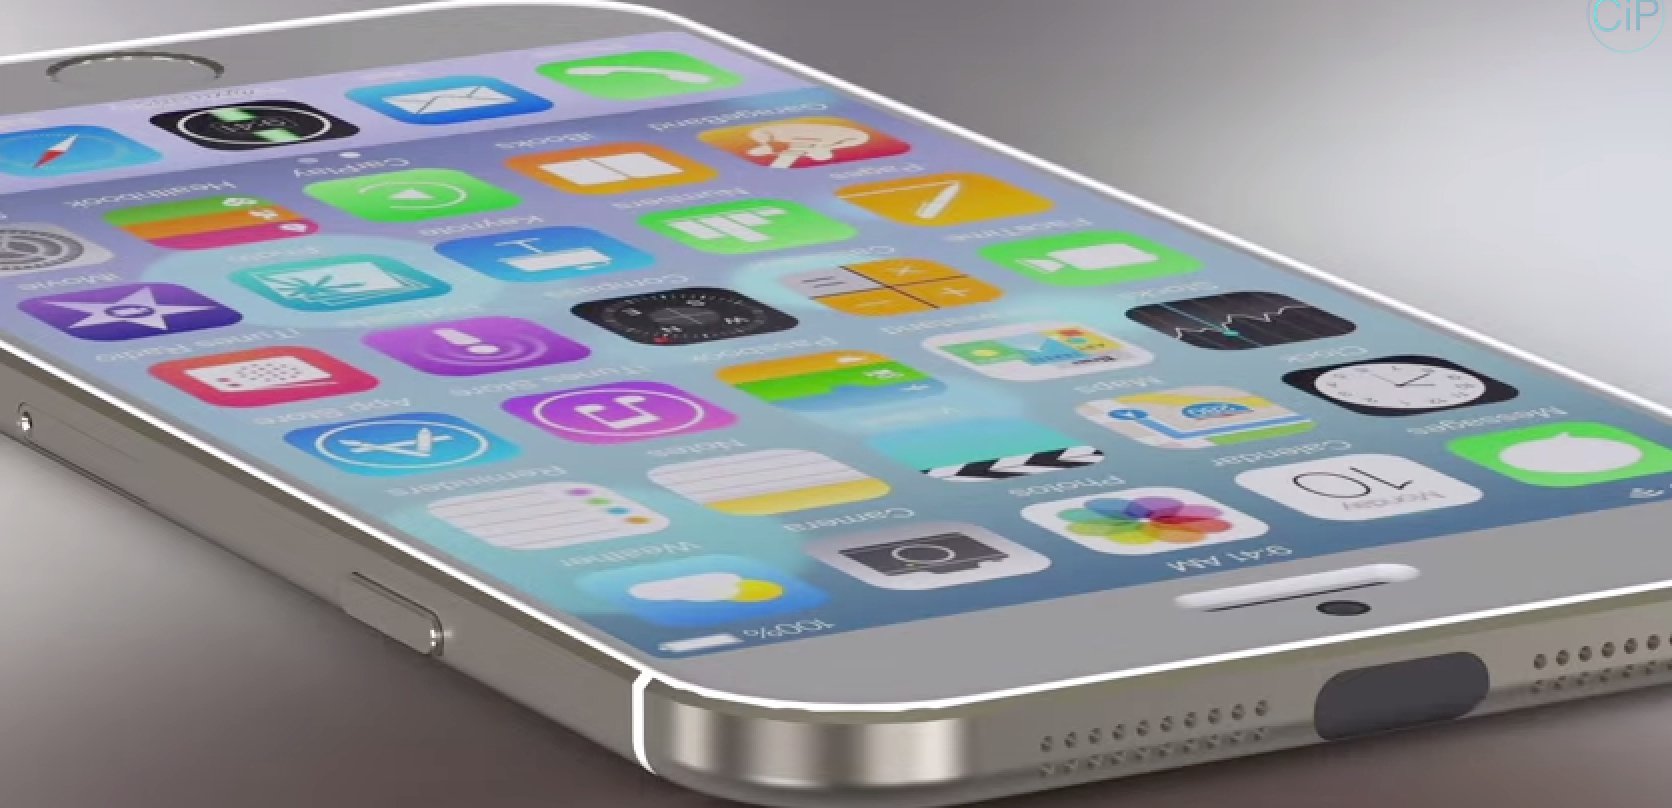 iPhone 6 mit iOS 8 im Vergleich mit Samsung Galaxy S5 (Konzept) 10